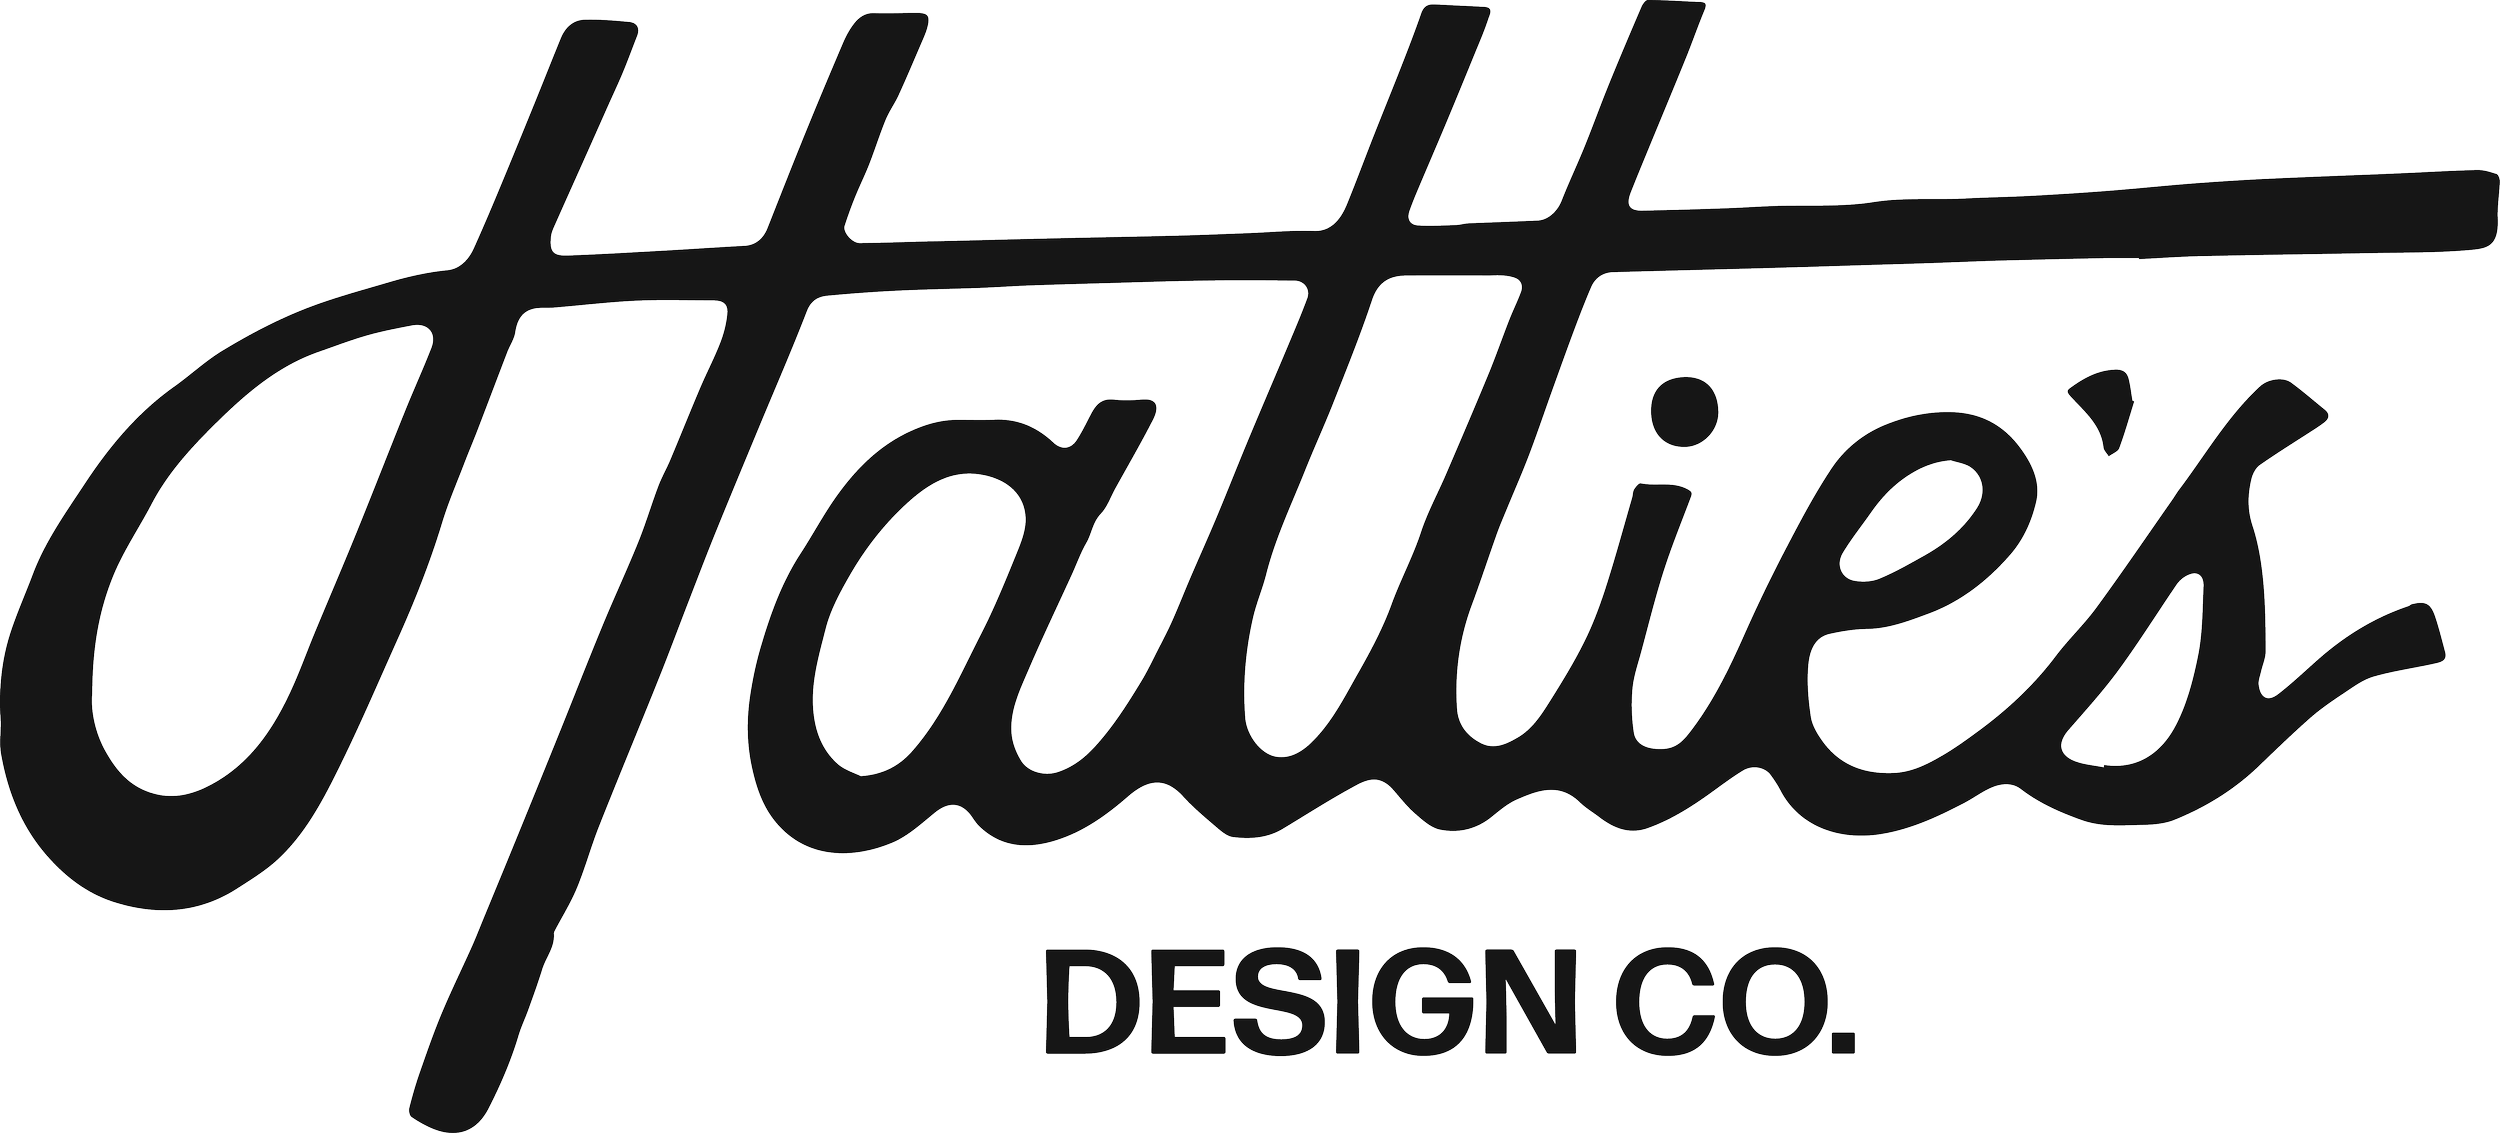 Hattie's Design Co. Branding Comprehensive.png